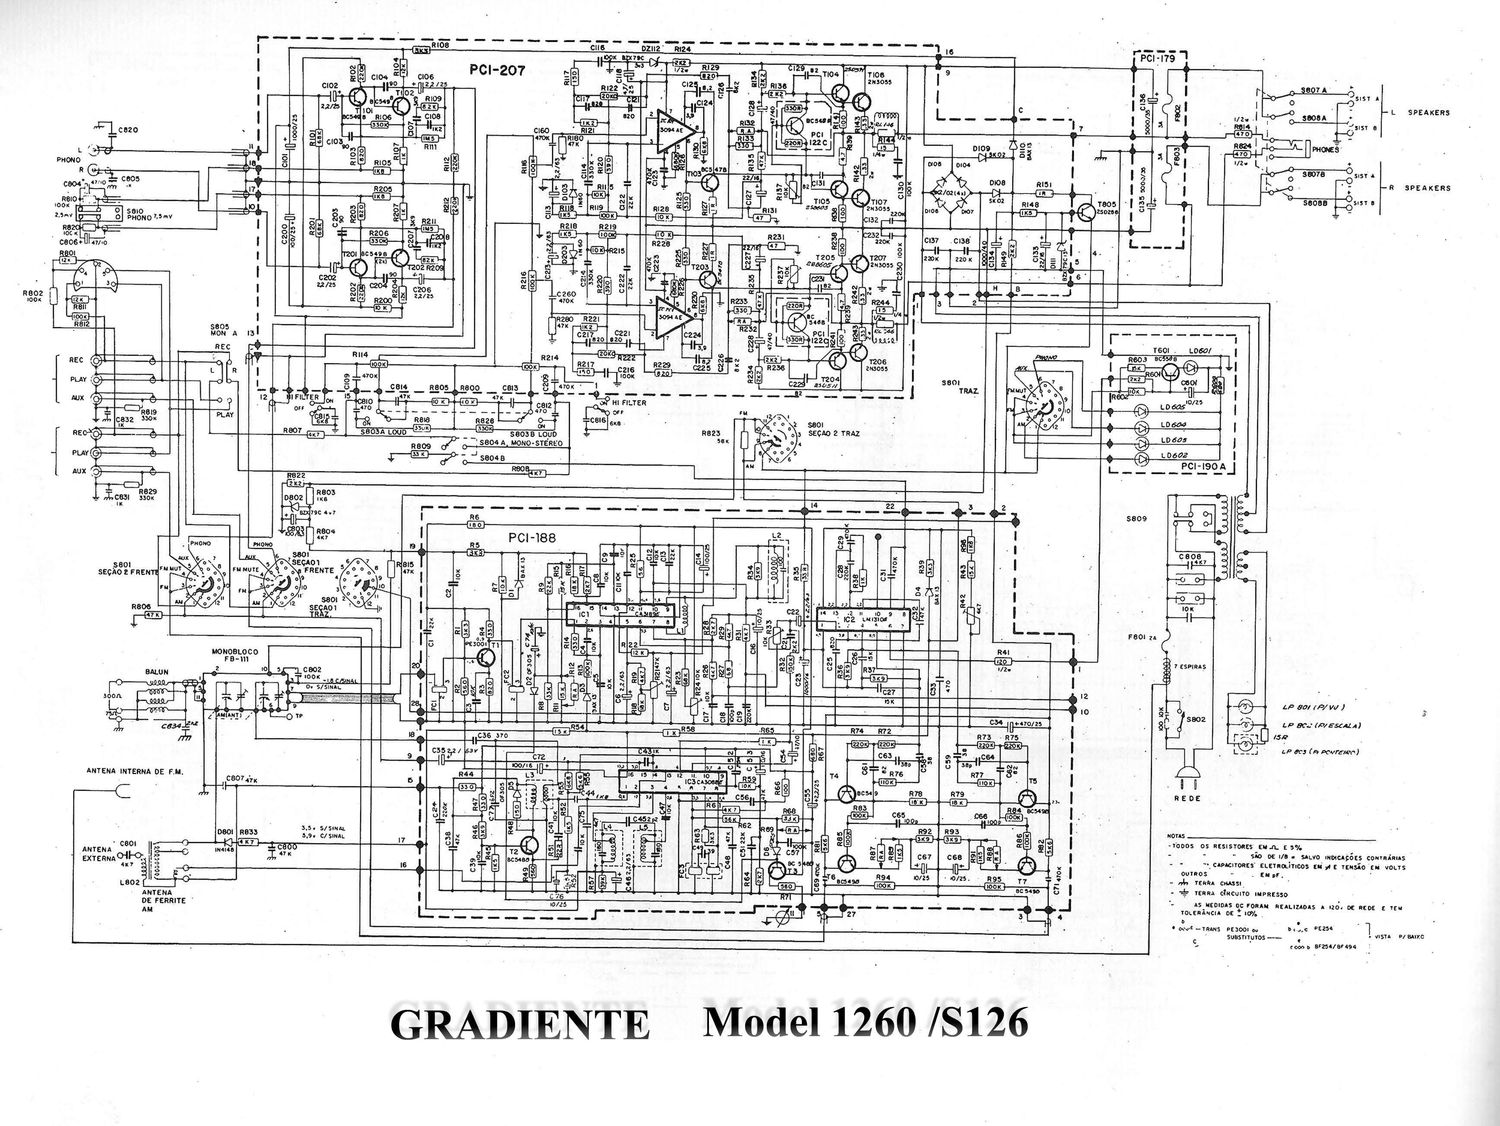 gradiente receiver model 1260 s126